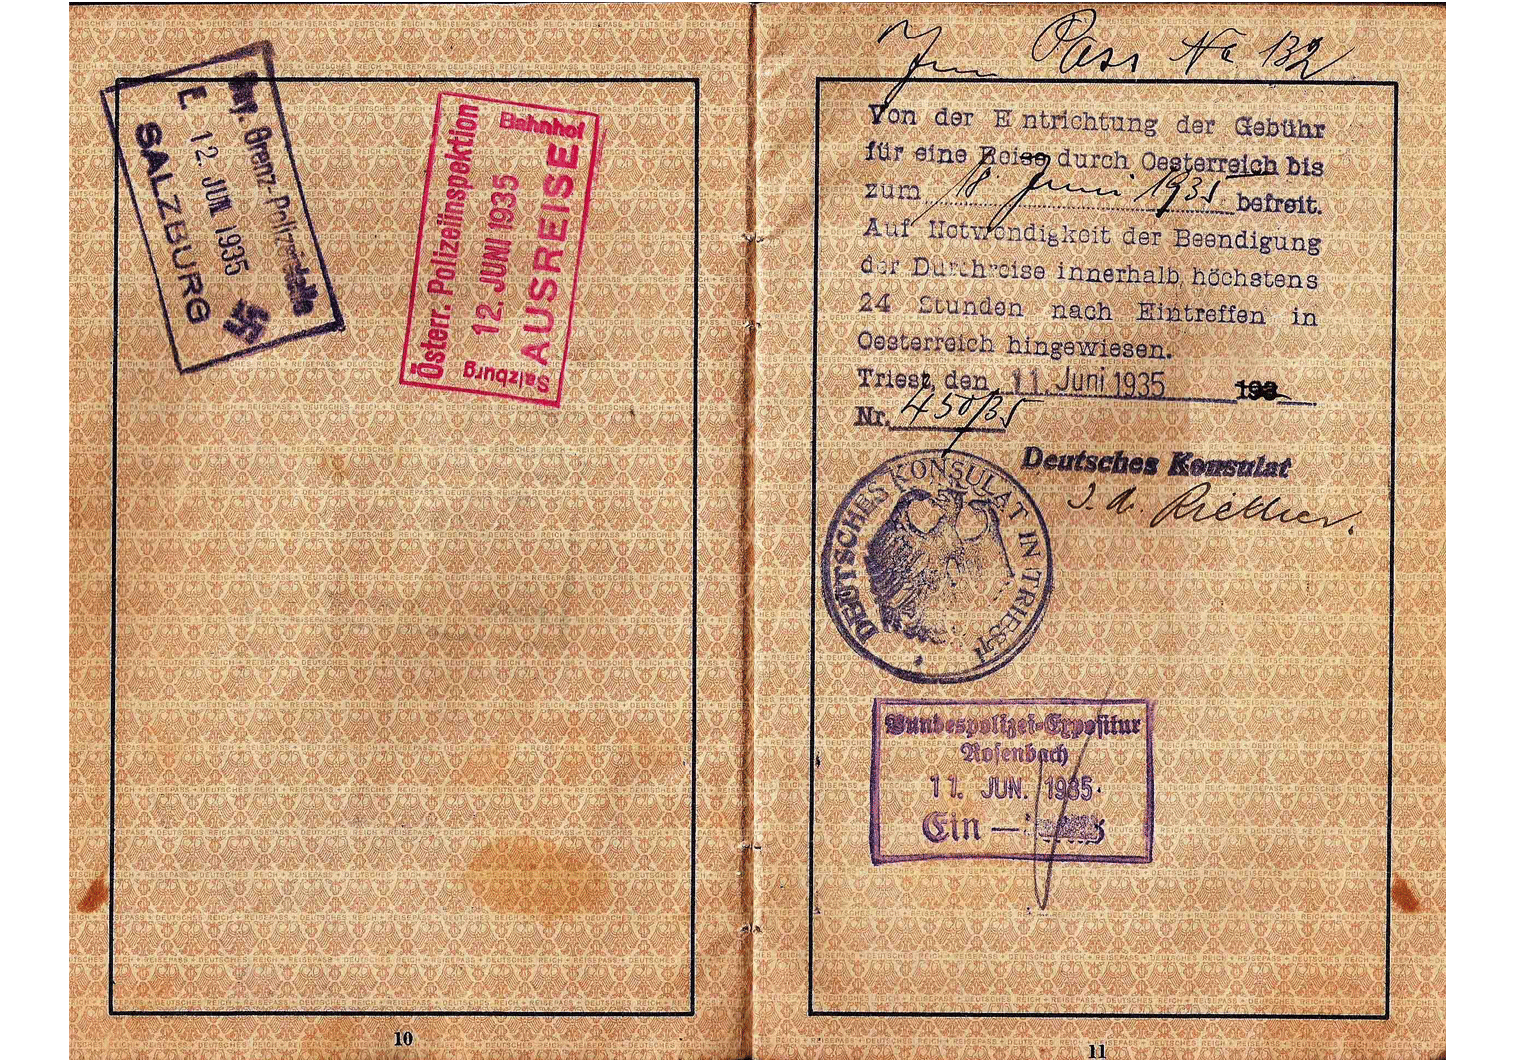 1936 German consulate visa